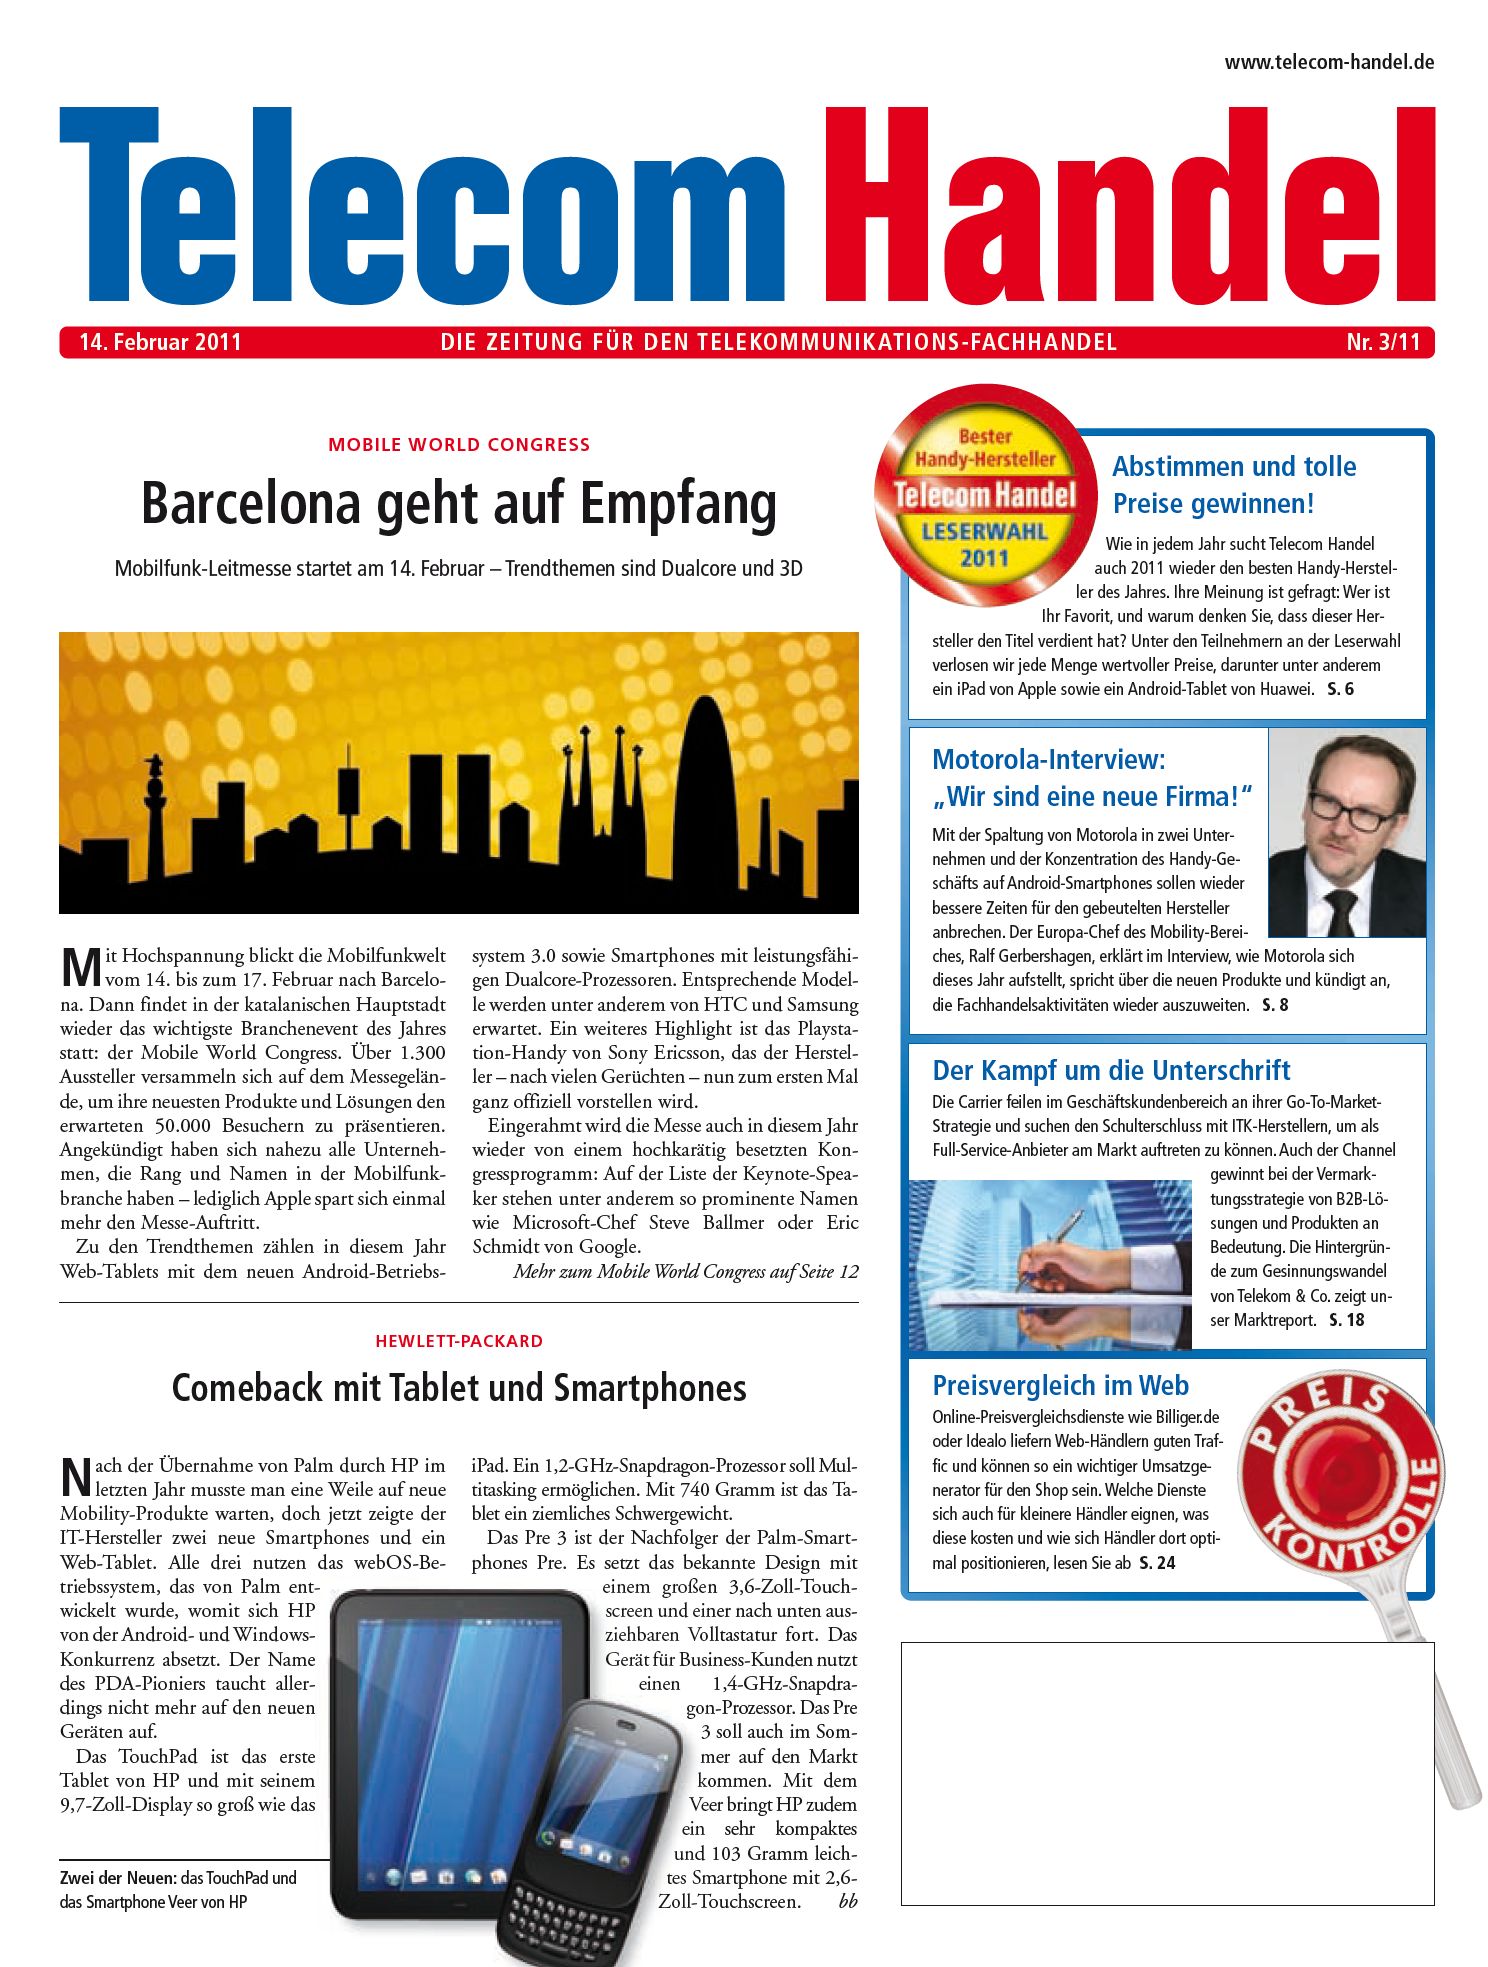 Telecom Handel Ausgabe 03/2011